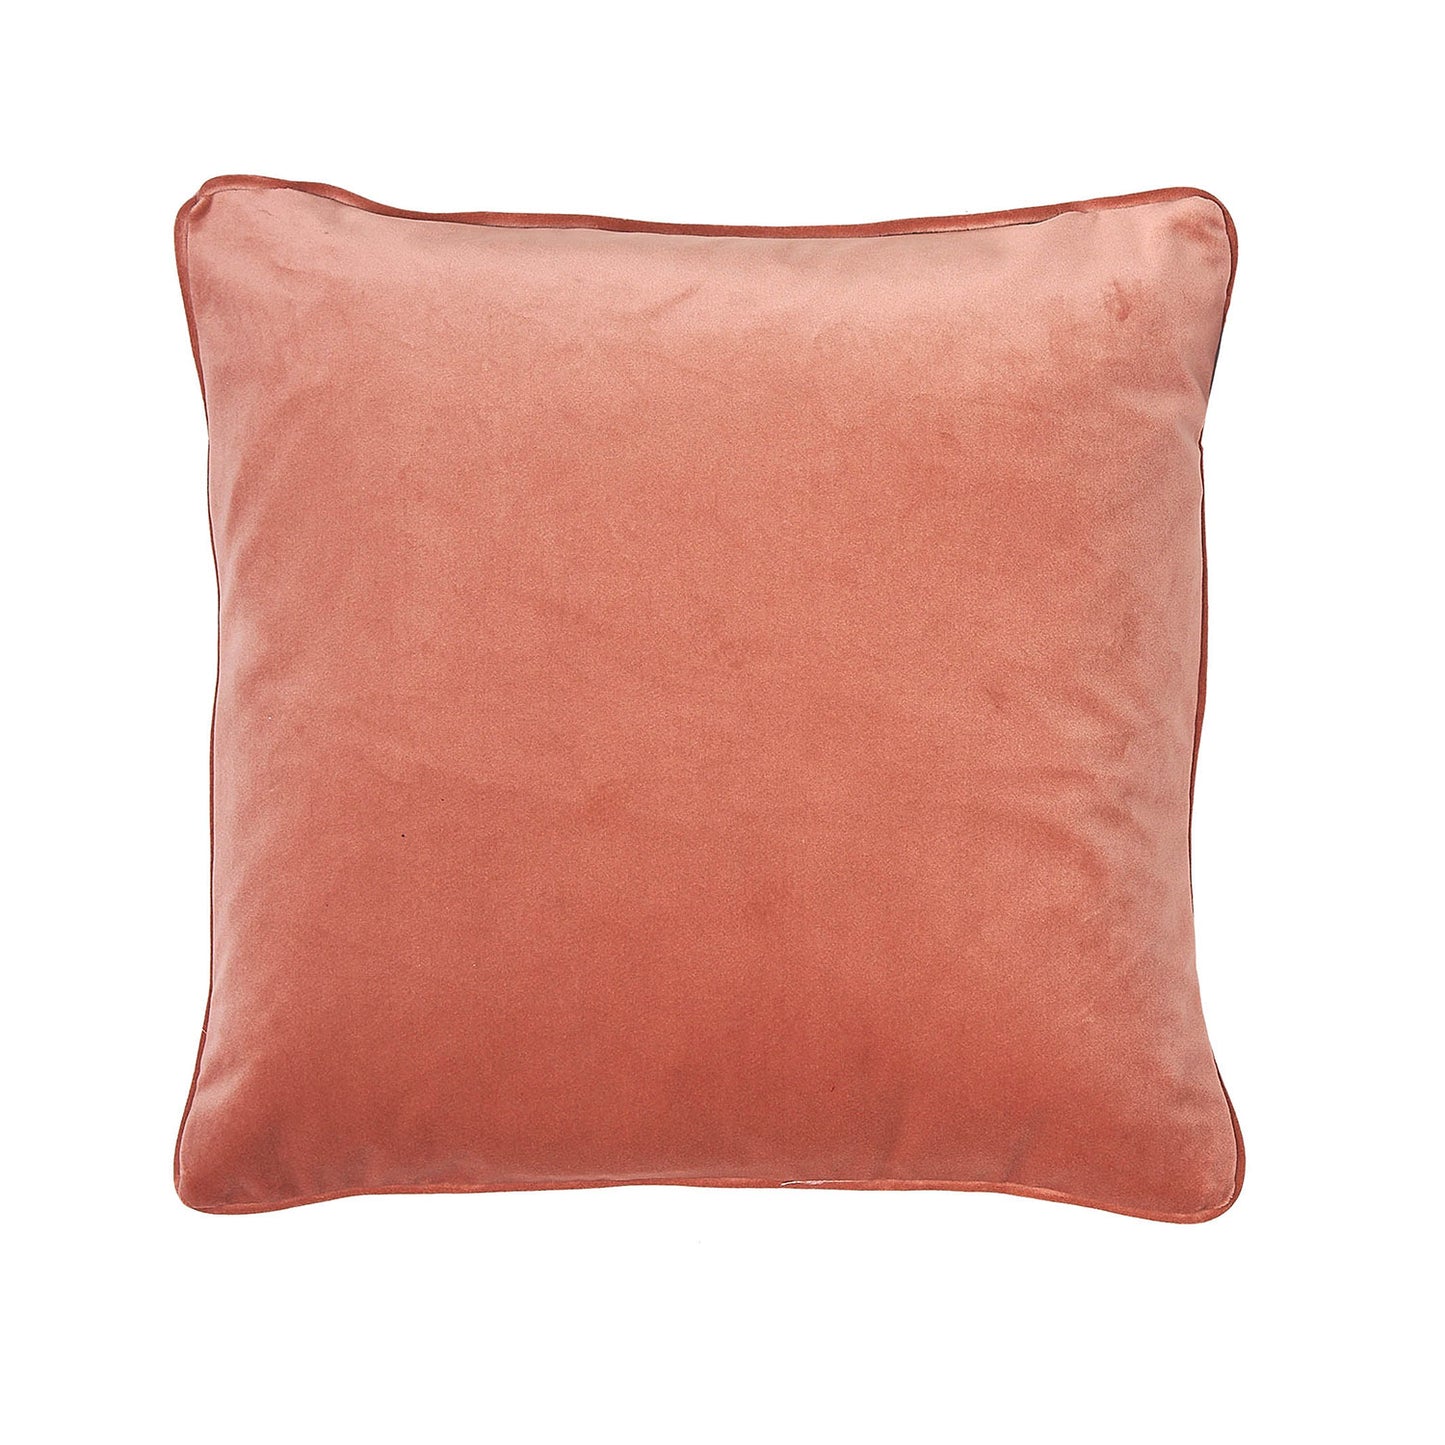 Clarissa Hulse Whispering Grass Shell Velvet Cushion (43cm x 43cm)